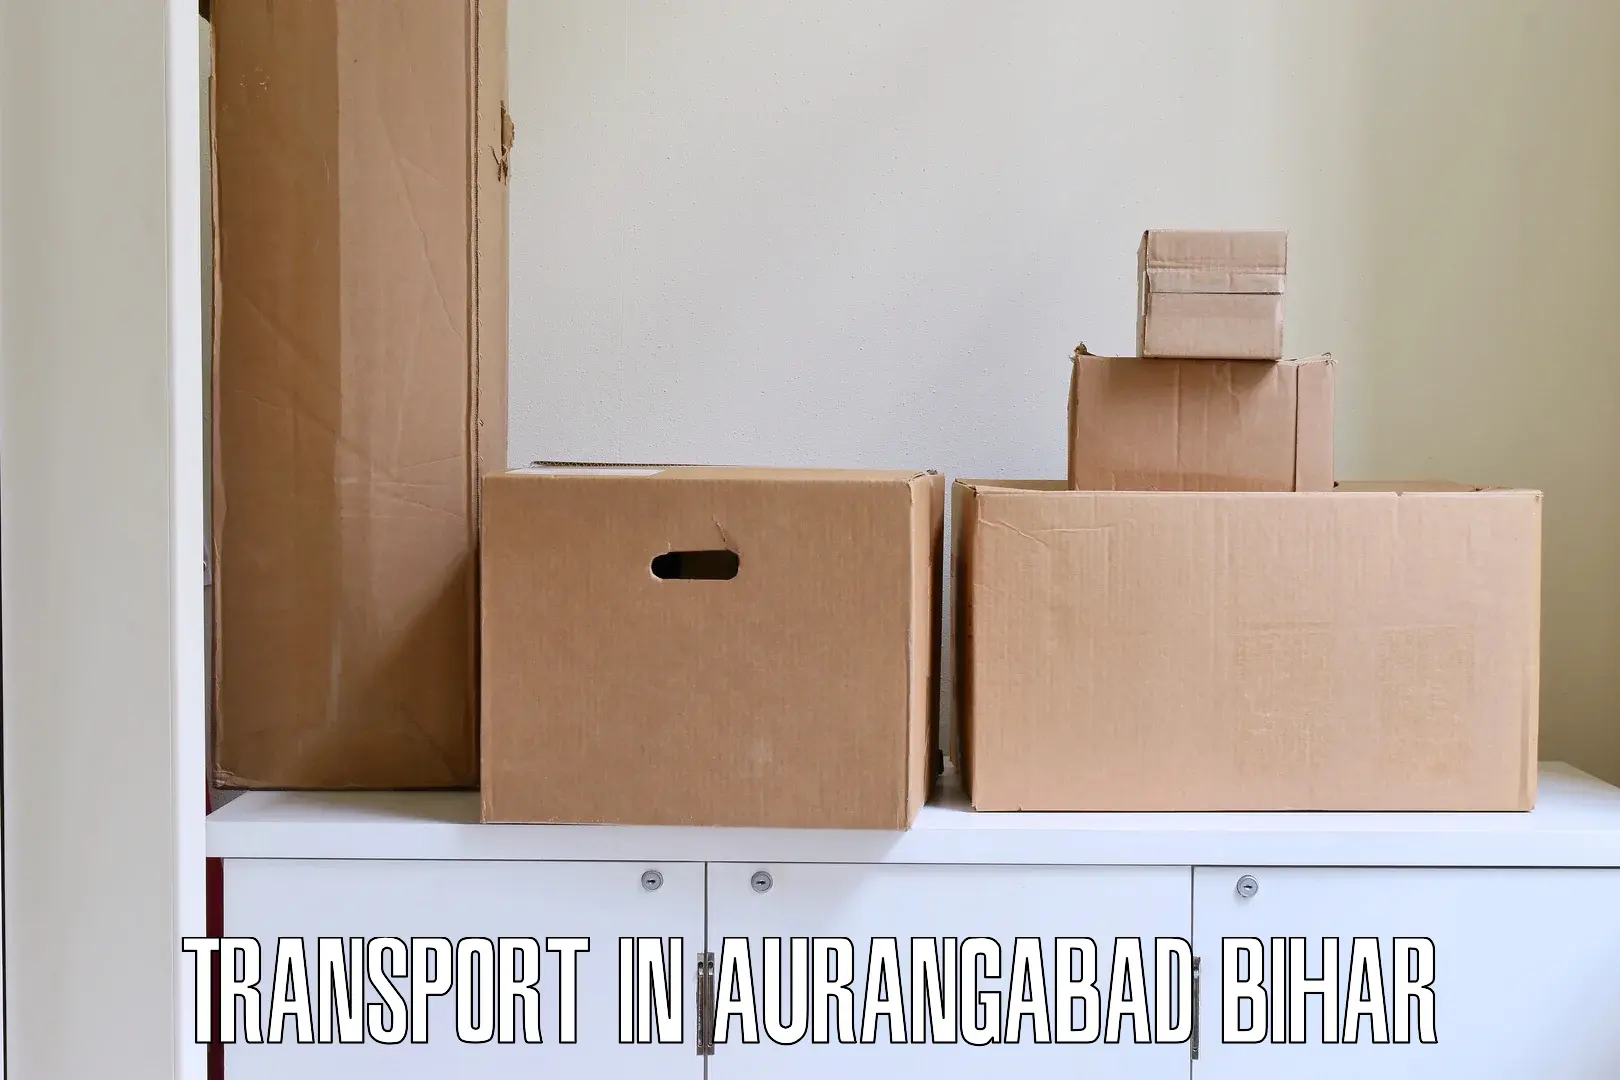 Two wheeler parcel service in Aurangabad Bihar